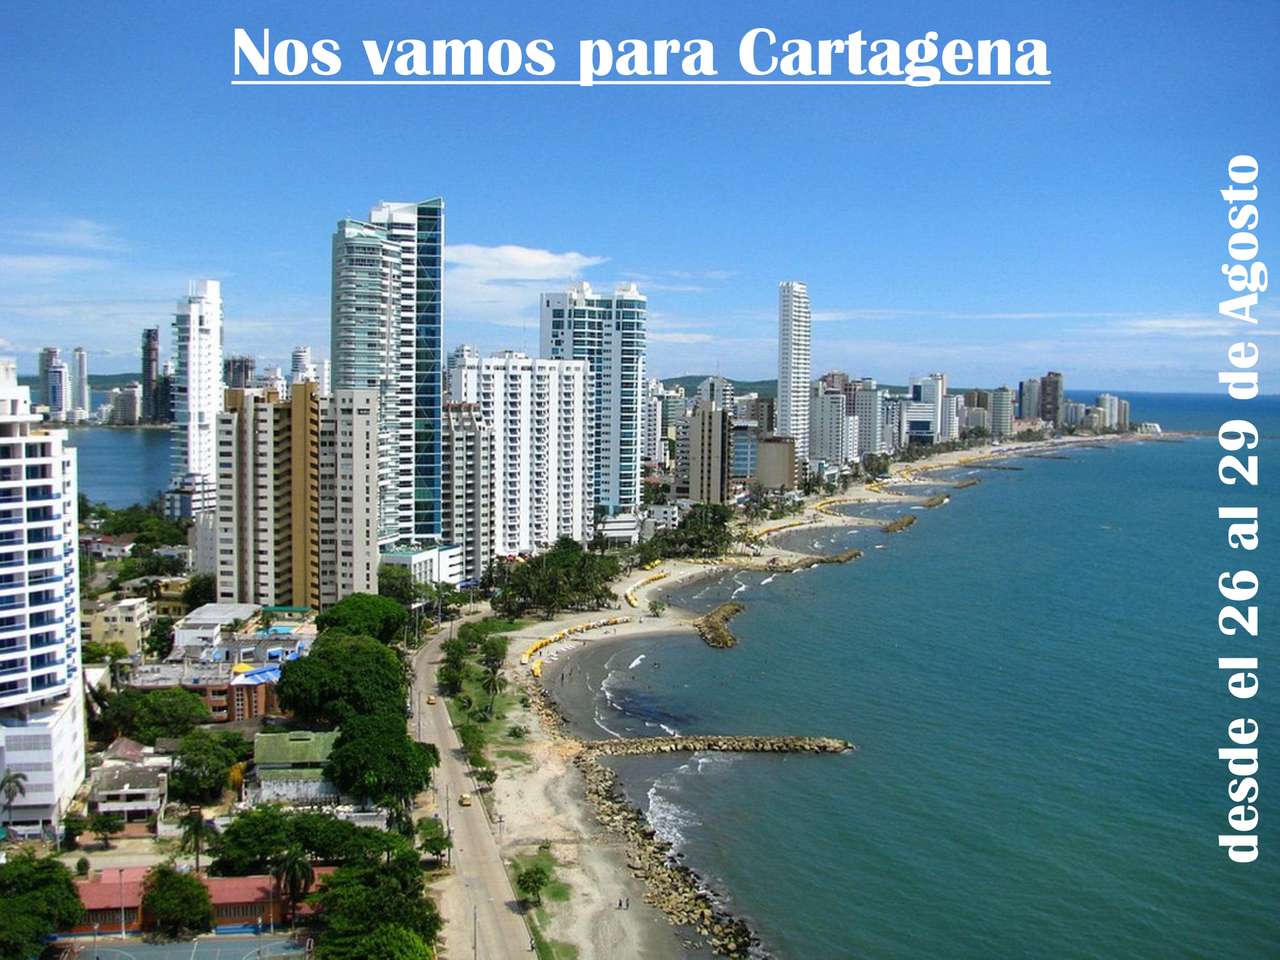 Estamos indo para Cartagena puzzle online